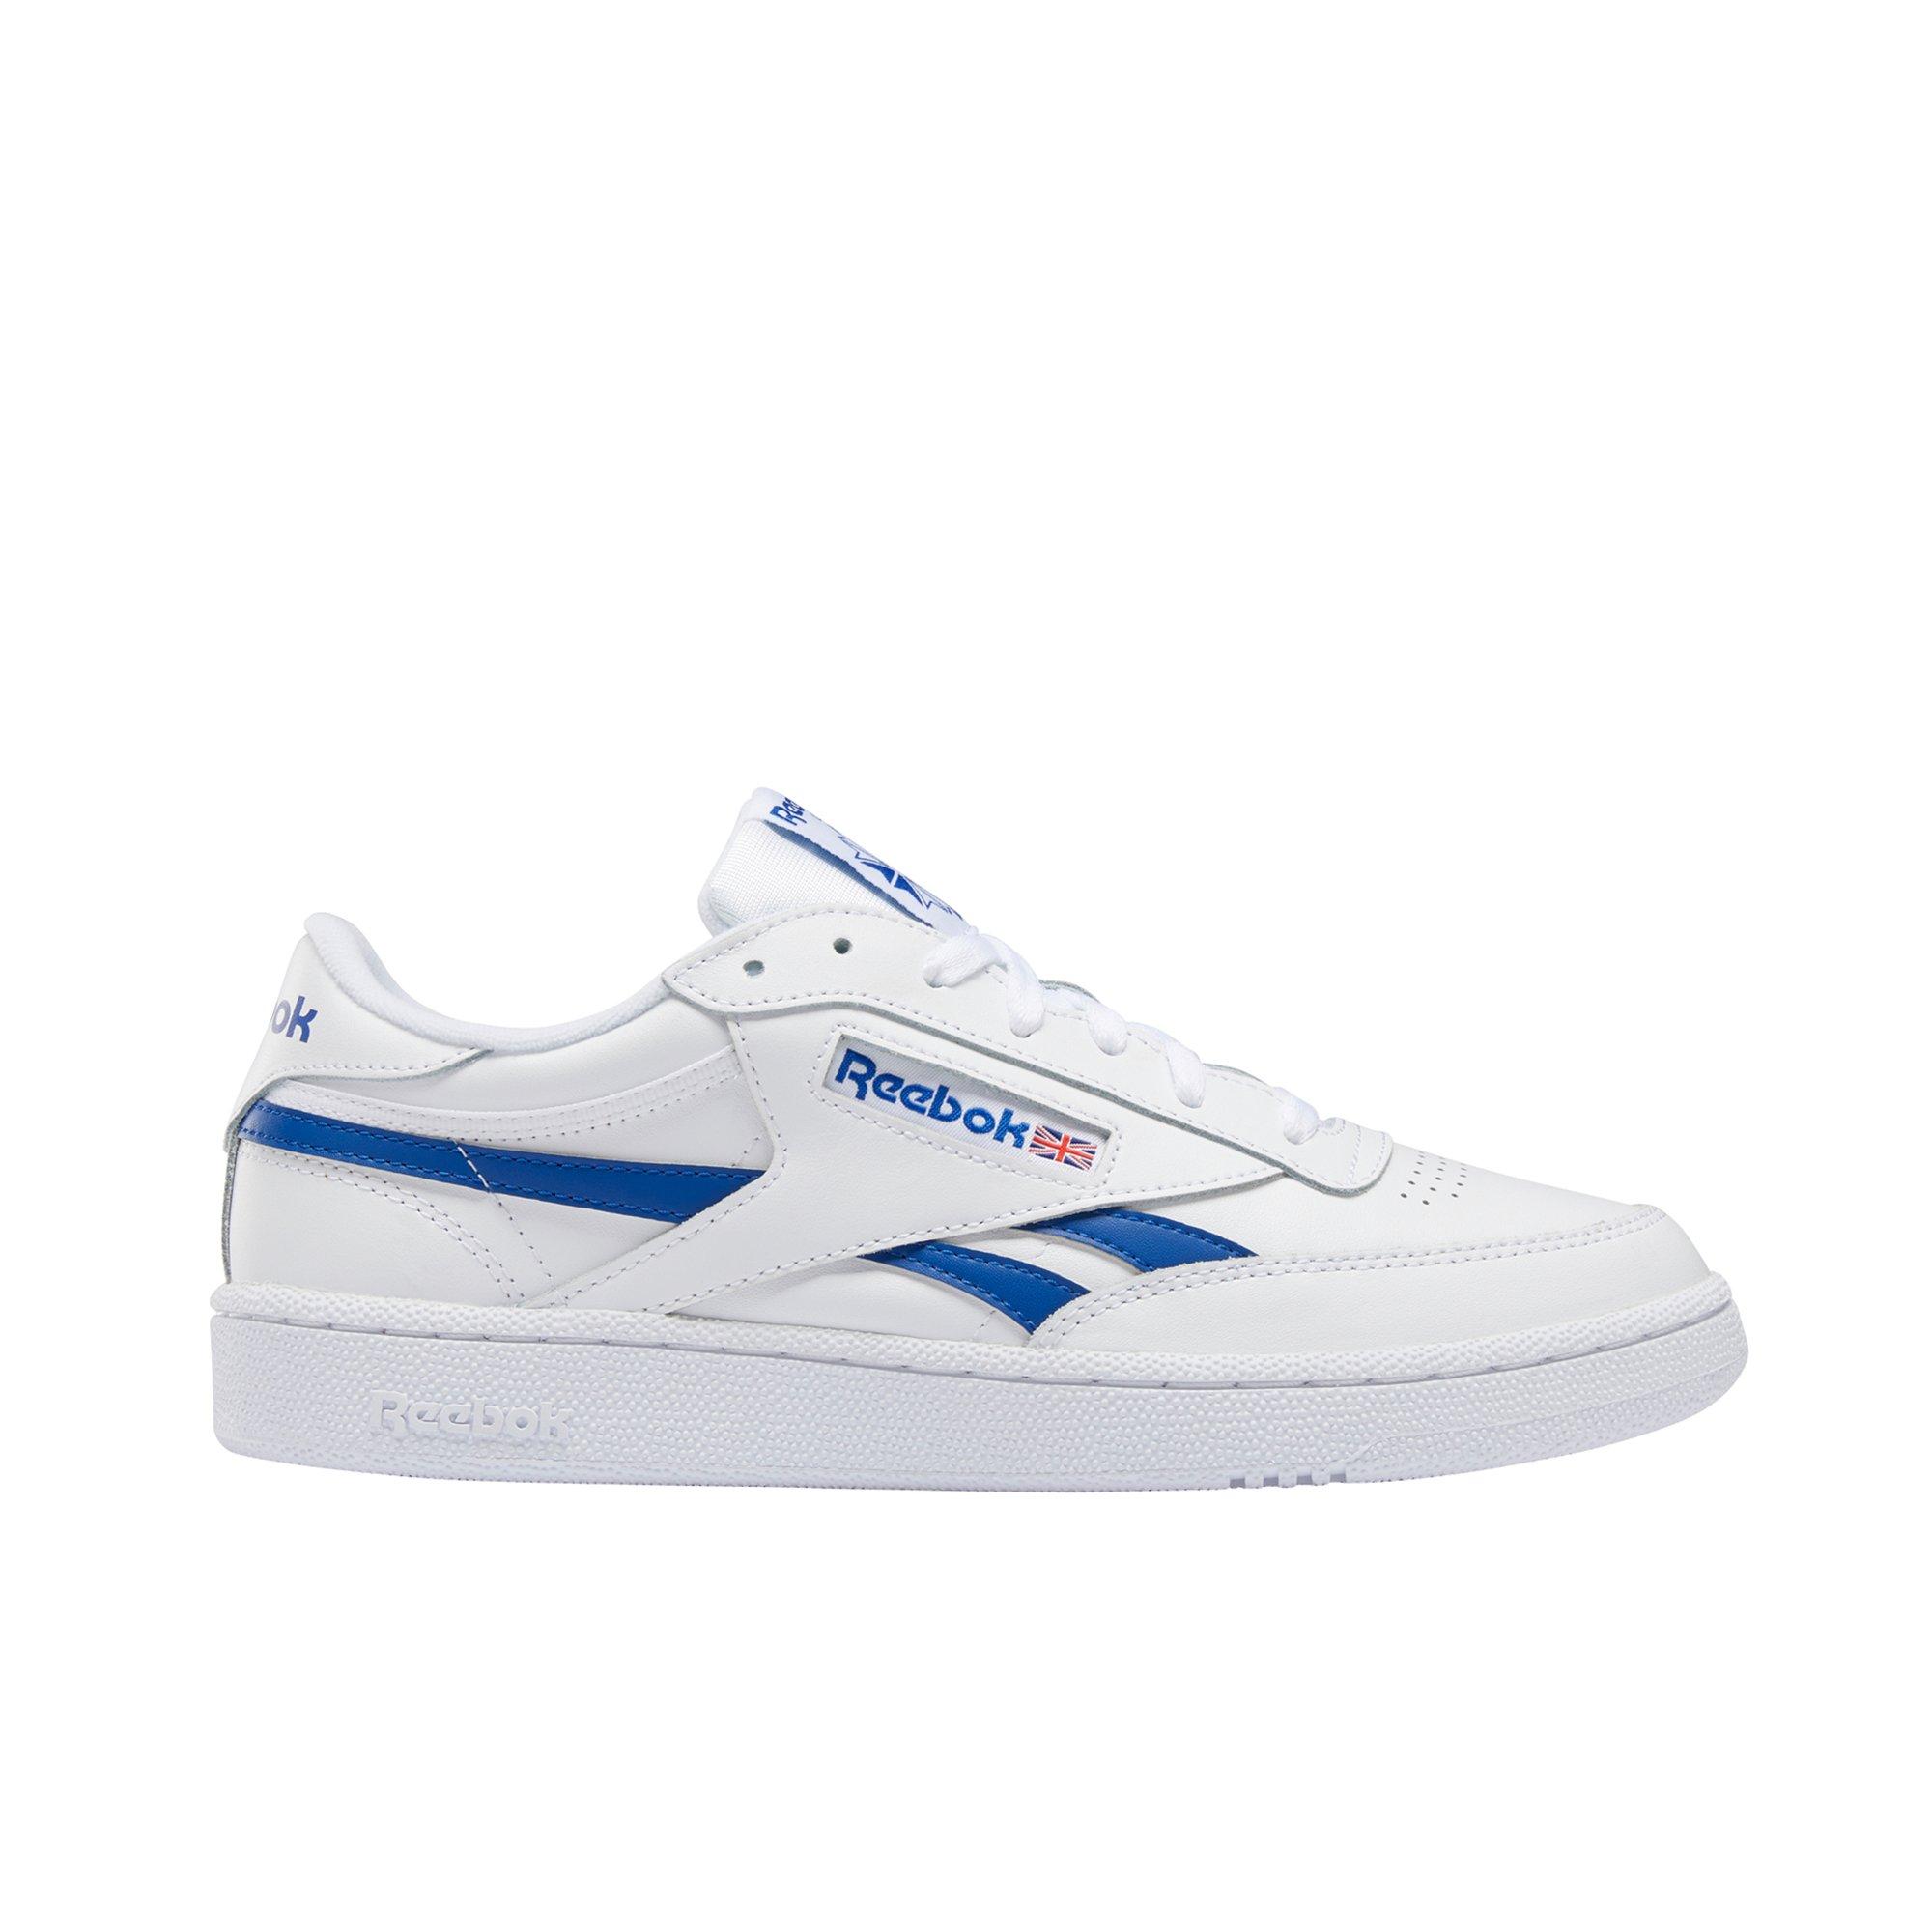 reebok shoes white blue